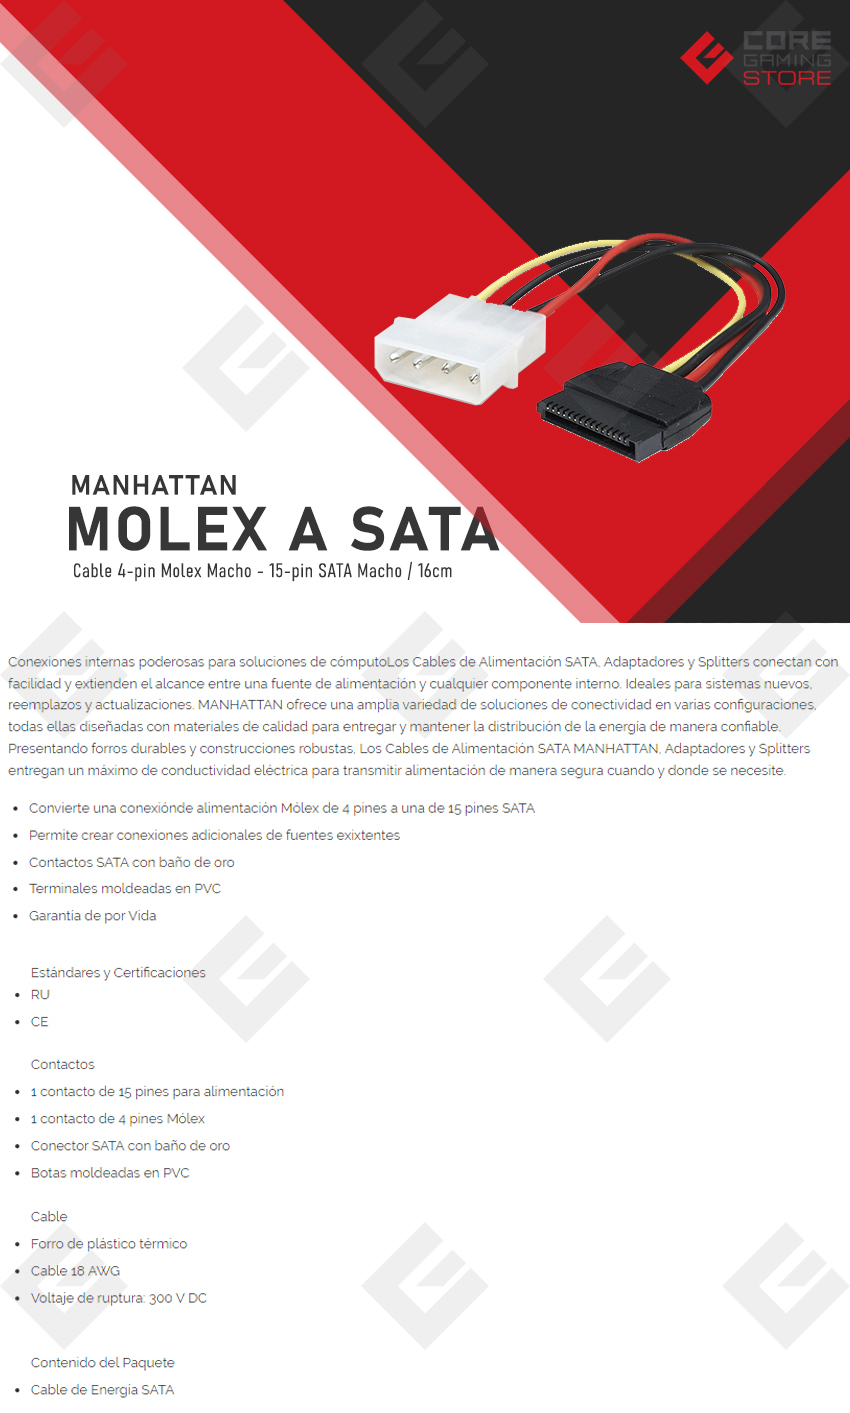 Cable de Corriente Molex a SATA Manhattan - 342766